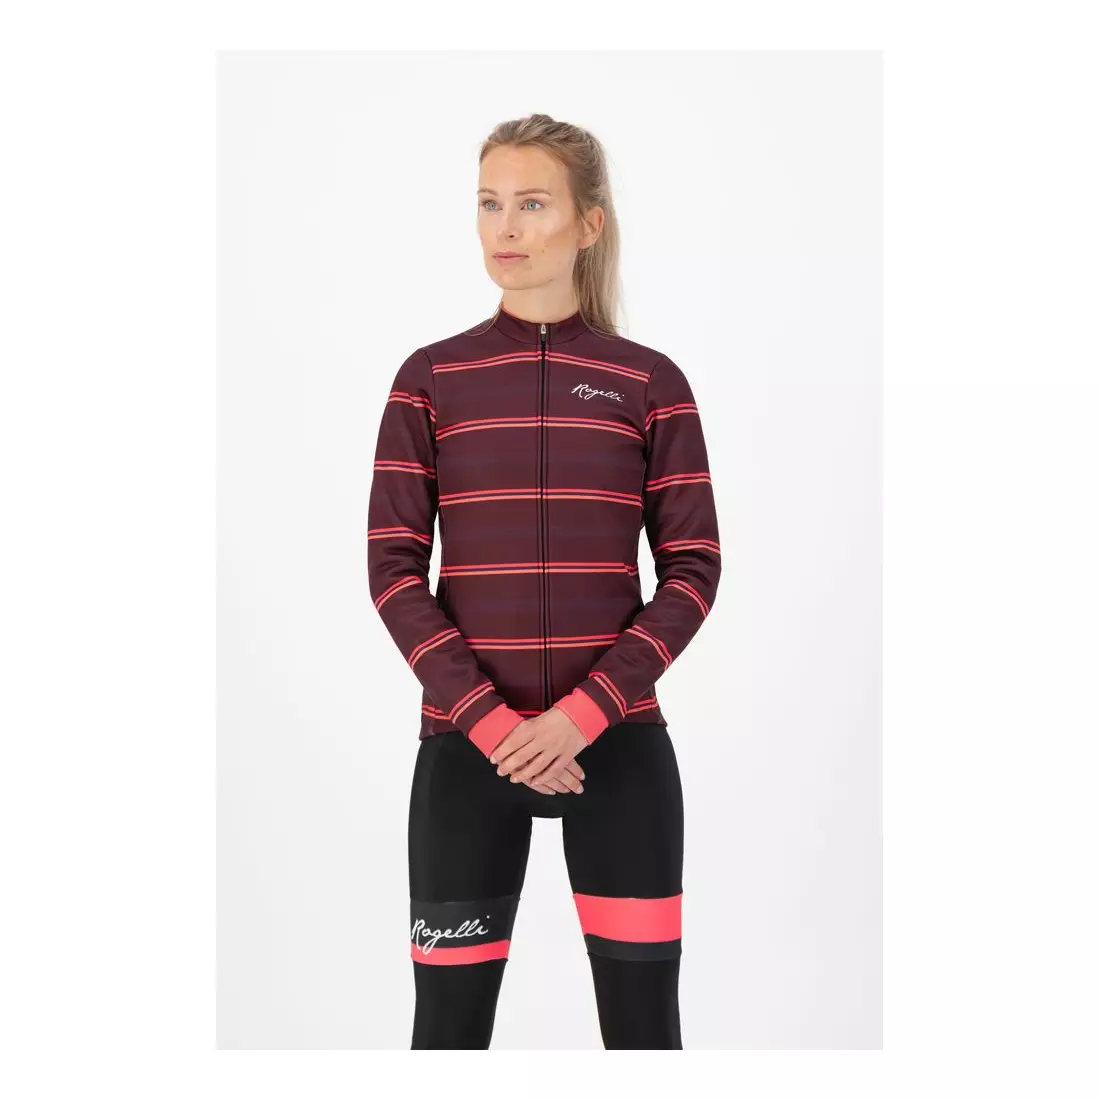 ROGELLI women's winter cycling jacket STRIPE bordeaux/coral ROG351089